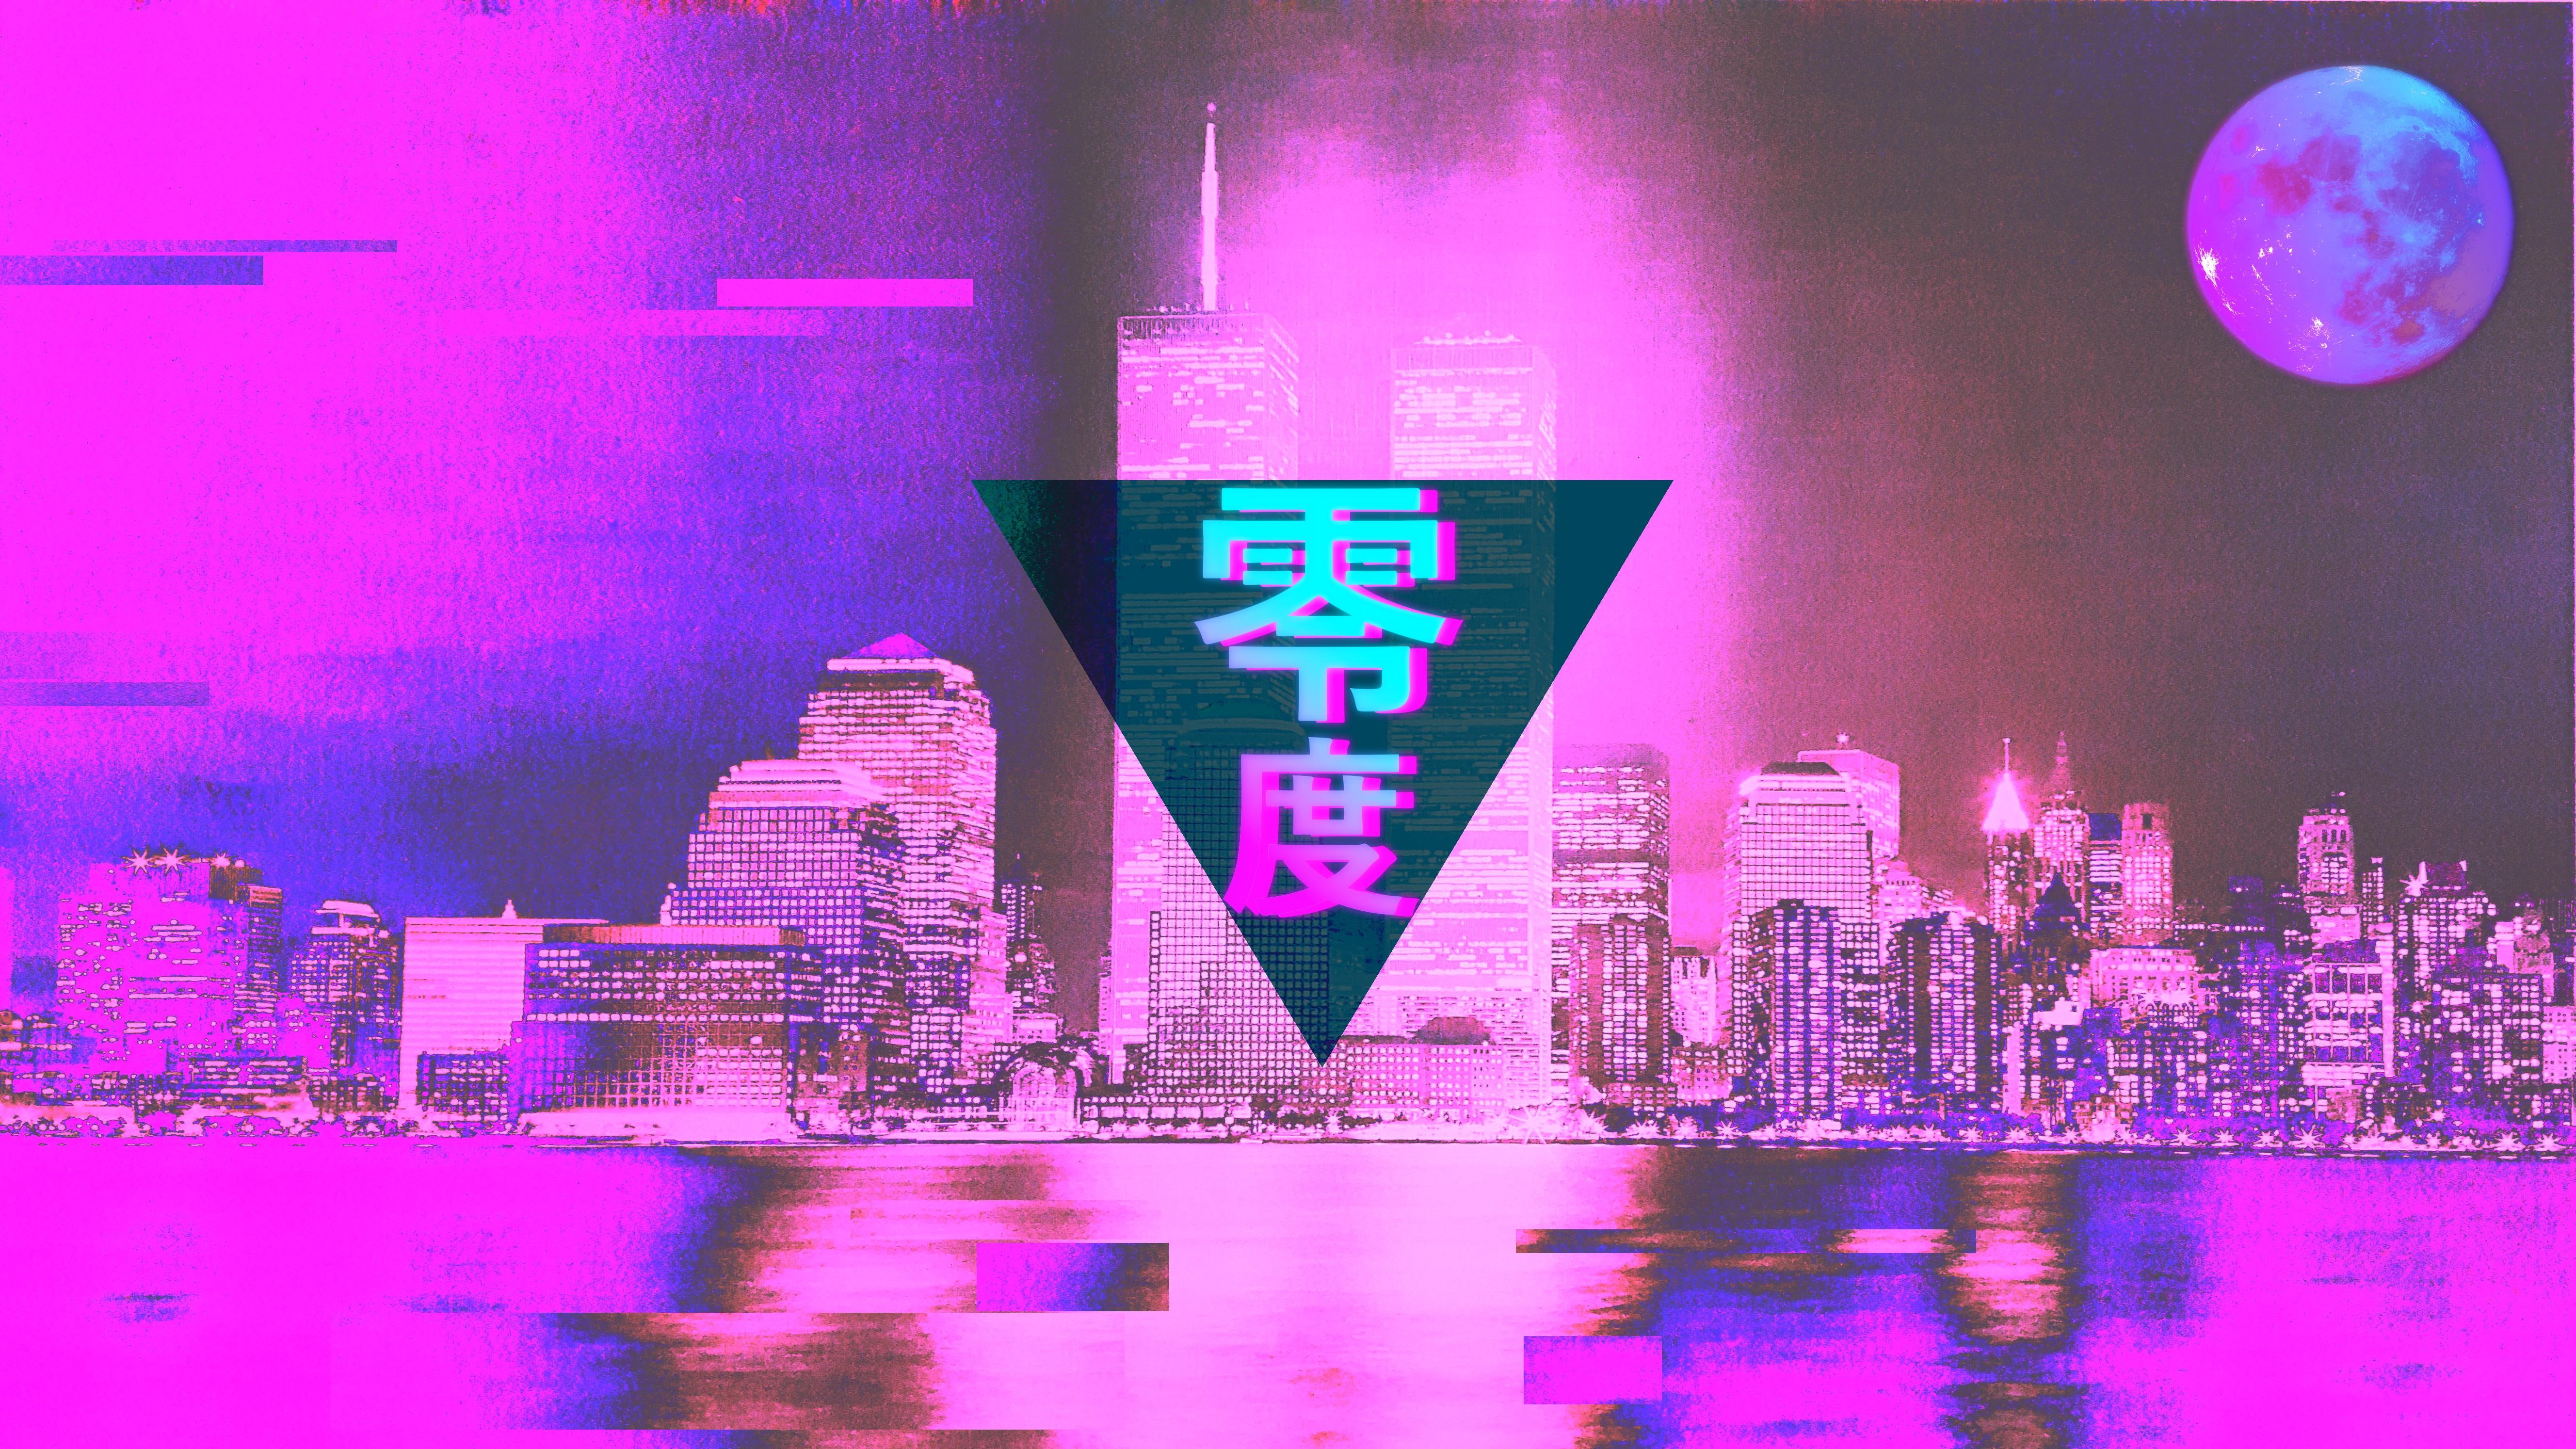 vaporwave, 1990s, cityscape